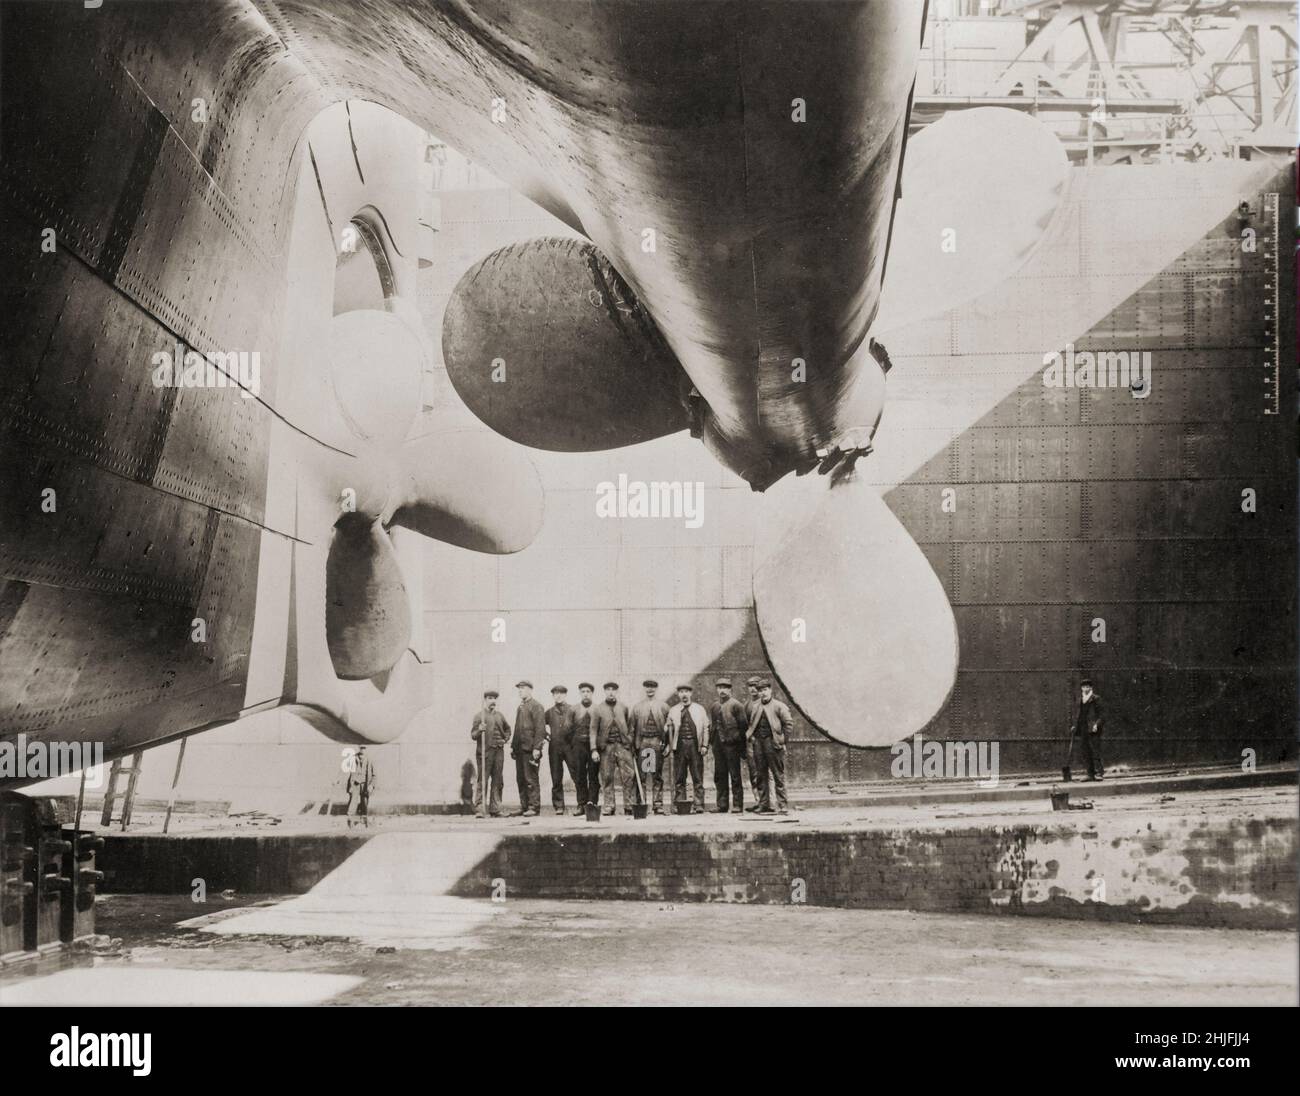 Ein Vintage-Foto von Werftarbeitern und den Propellern, die RMS Titanic, das britische Passagierflugzeug, vor seinem Start im Jahr 1911 angetrieben haben. Betrieben von der White Star Line, die am 15. April 1912 im Nordatlantik versank, nachdem sie während ihrer Jungfernfahrt von Southampton, Großbritannien, nach New York City einen Eisberg geschlagen hatte. Von den geschätzten 2.224 Passagieren und der Besatzung an Bord starben mehr als 1.500, was den Untergang wahrscheinlich zu einem der tödlichsten für ein einziges Schiff bis zu dieser Zeit machte. Stockfoto